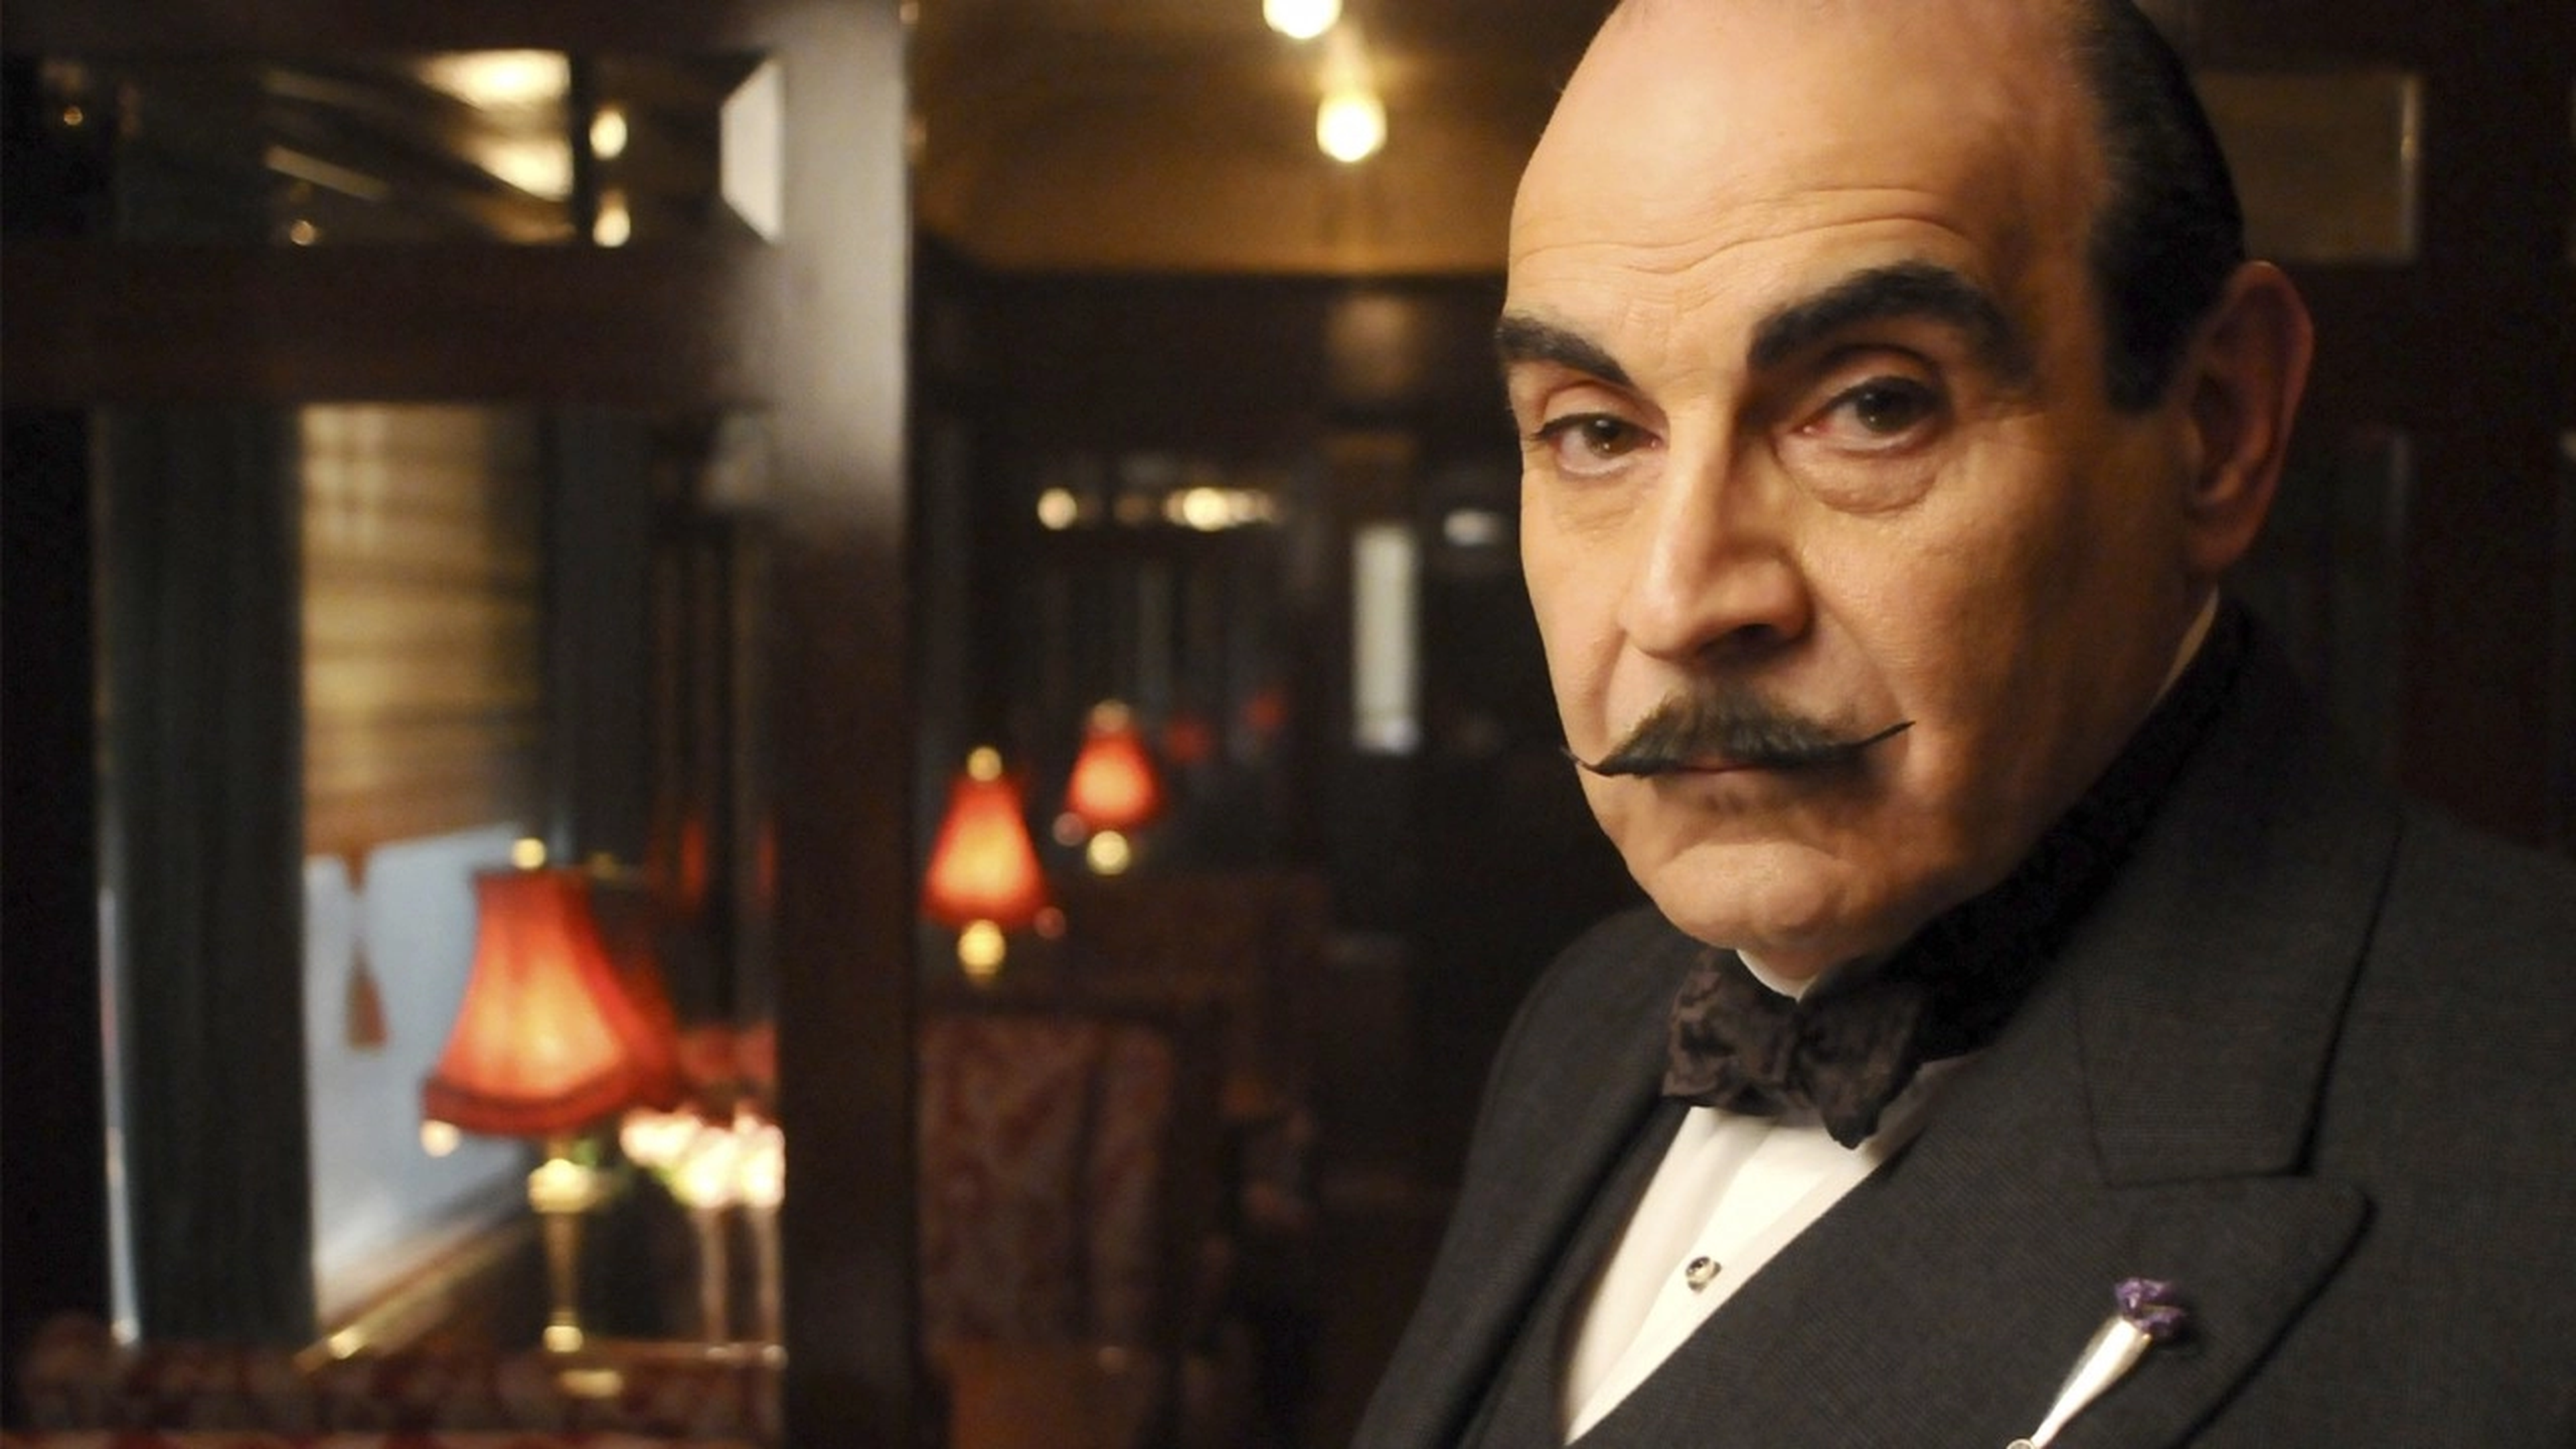 El presumido y brillante detective de Agatha Christie, Hercules Poirot.